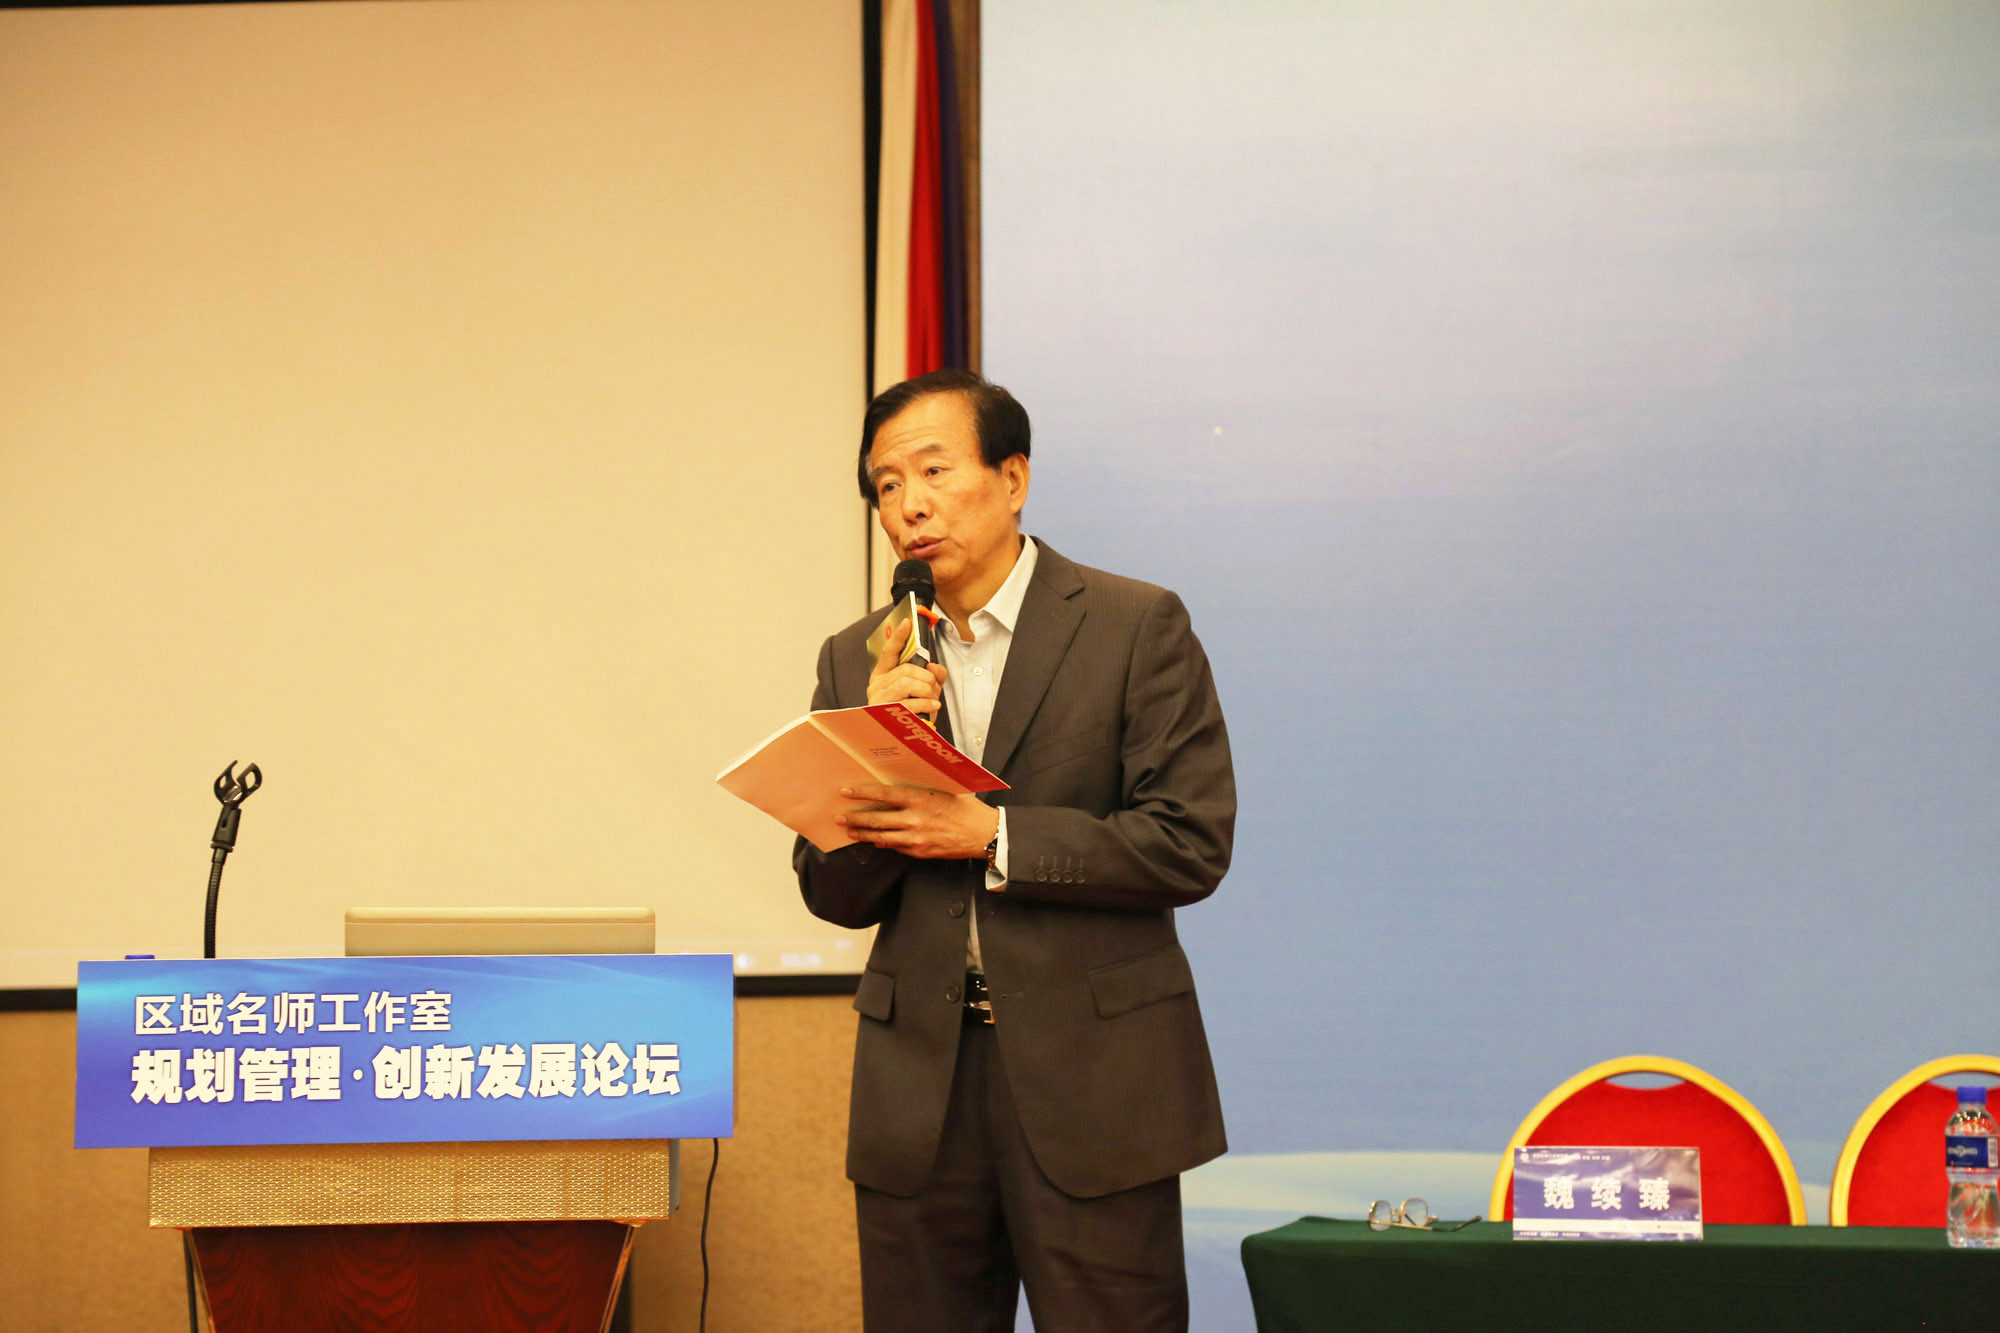 北京中教市培教育研究院常务副院长魏续臻、臧富仁、吕凤祥分别主持了部分场次的论坛。